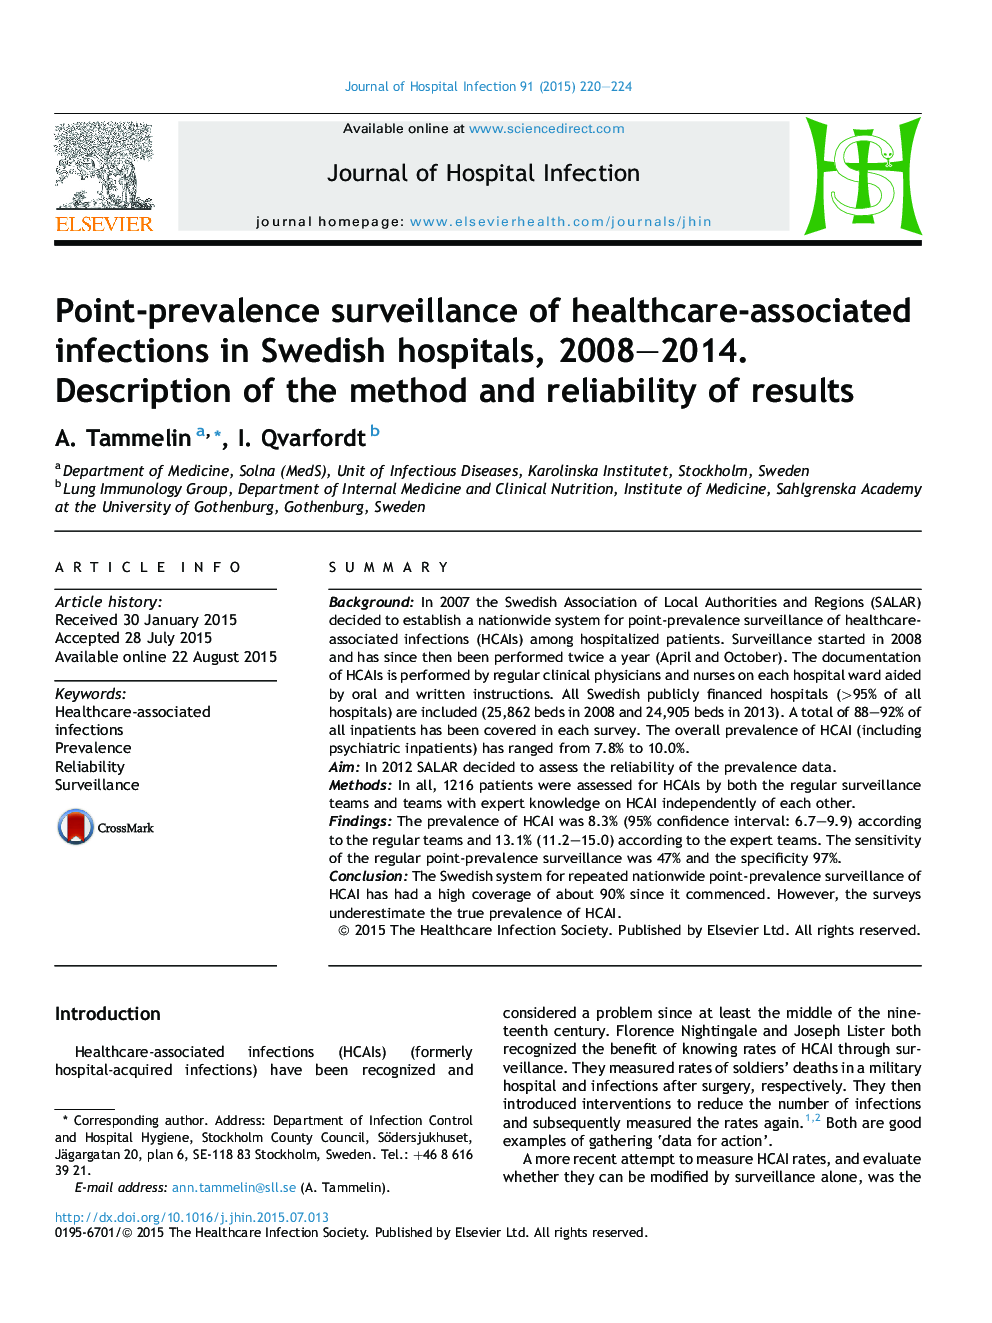 نظارت بر شیوع موارد عفونت های مربوط به مراقبت های بهداشتی در بیمارستان های سوئدی، سال های 2008-2014. شرح روش و قابلیت اطمینان نتایج 